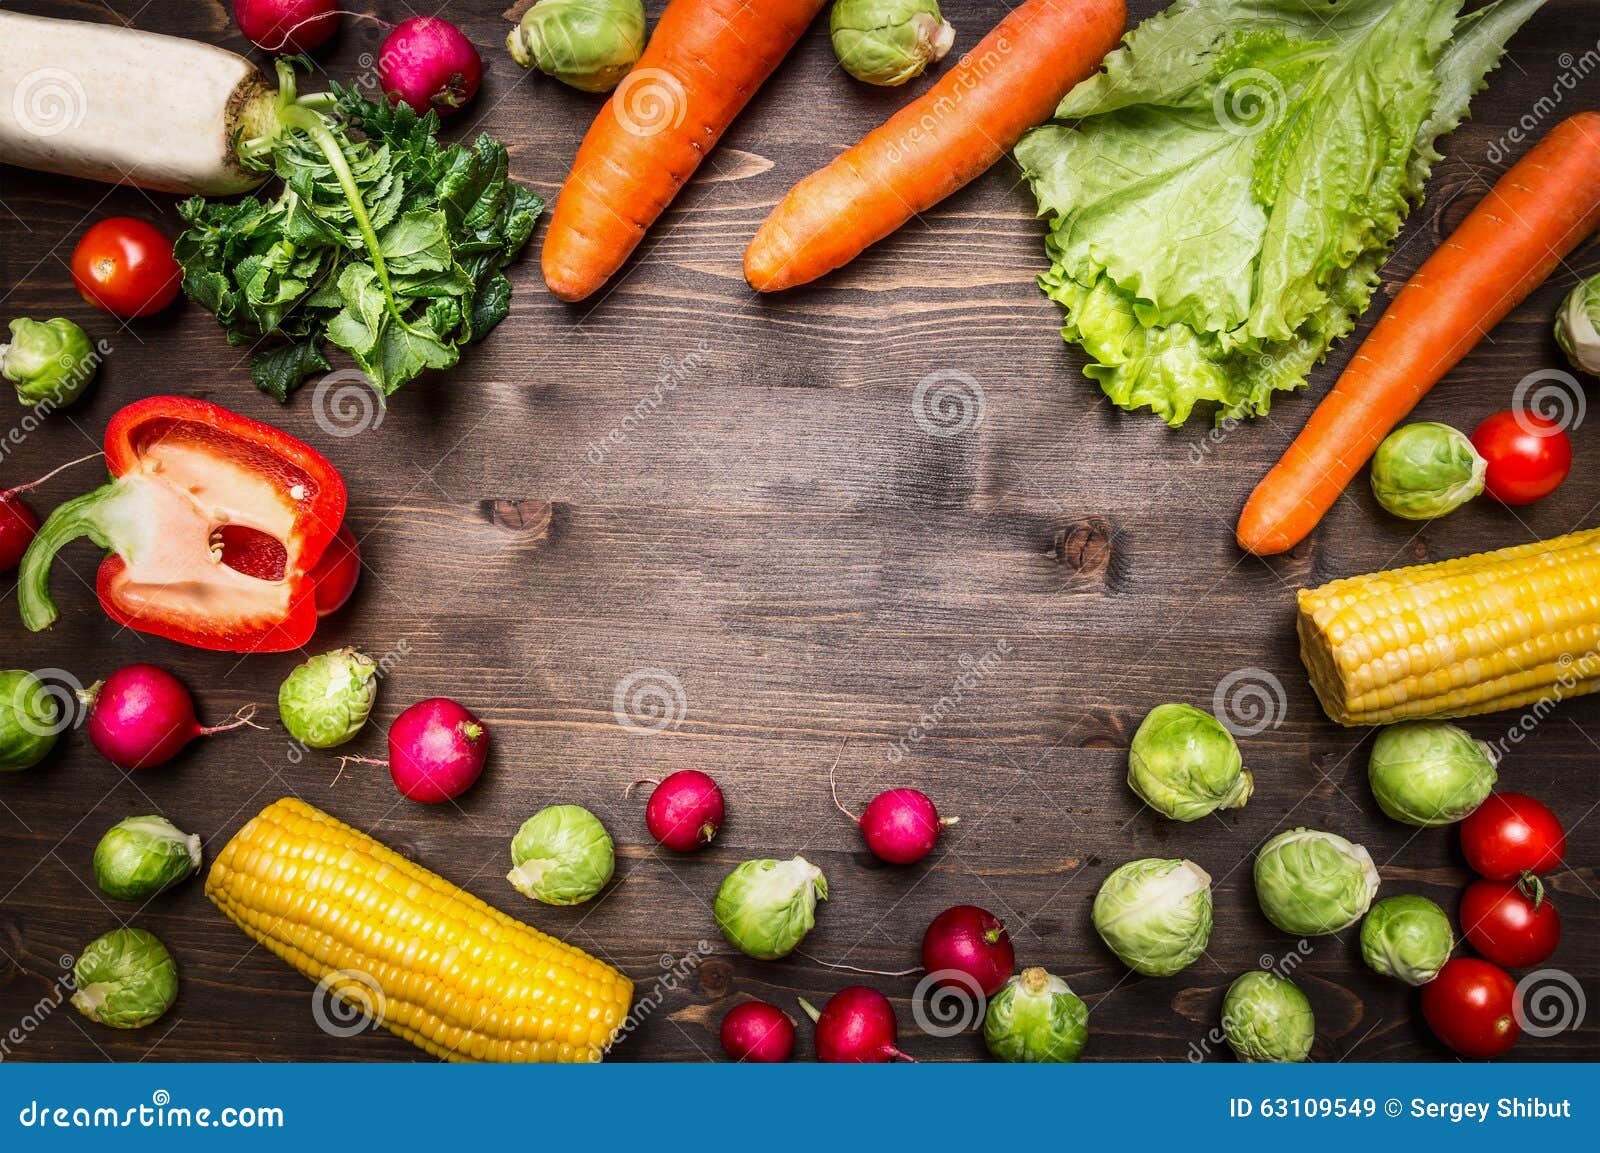 Здоровая еда, варить и вегетарианская концепция перчат, моркови, daikon, салат, редиски, мозоль, текст места розмаринового масла,. Здоровая еда, варить и вегетарианская концепция перчат, моркови, daikon, салат, редиски, мозоль, место розмаринового масла для текста, рамки на деревянном деревенском взгляд сверху предпосылки